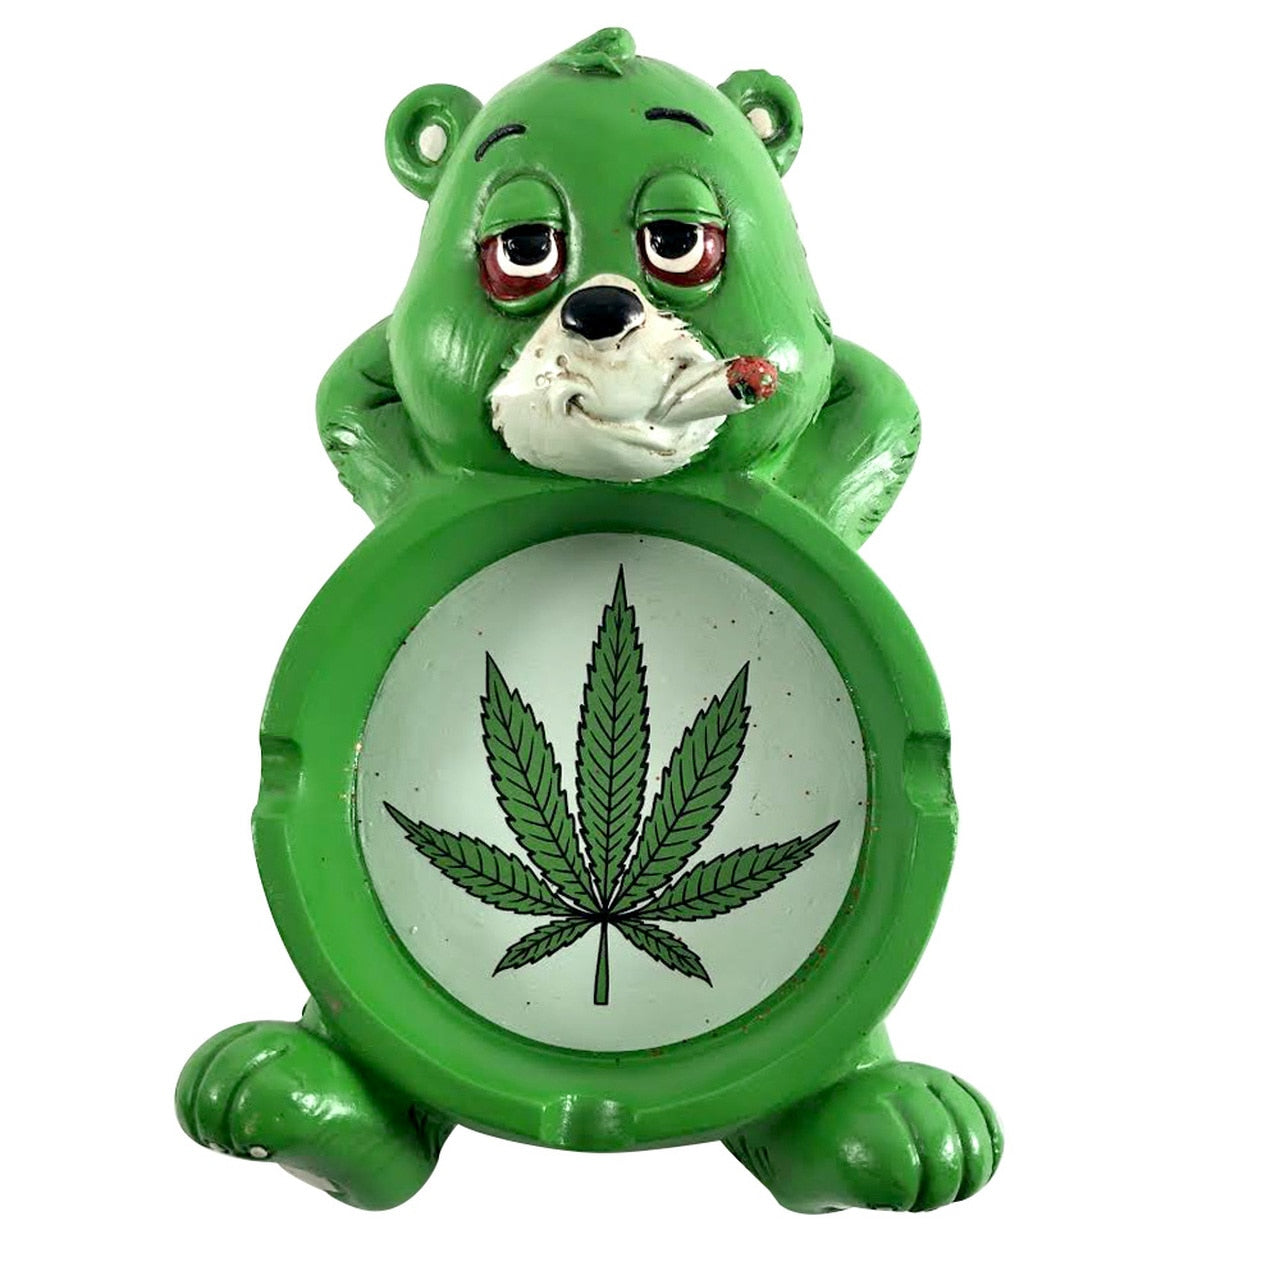 Green and white stoned bear ashtray. 